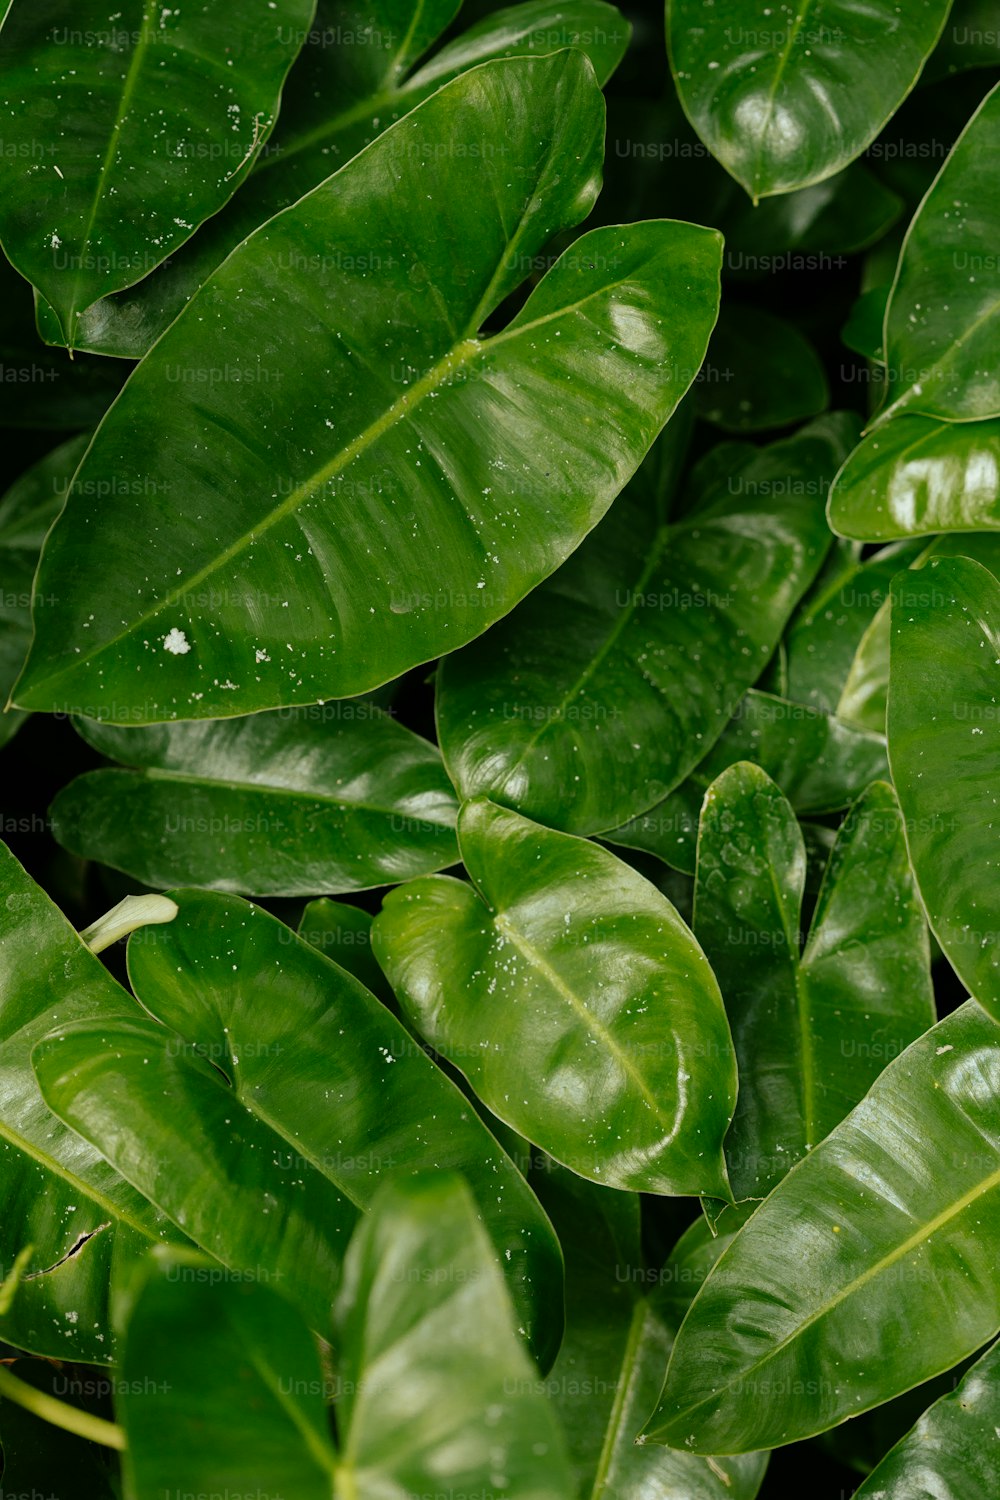 Gros plan d’une plante à feuilles vertes